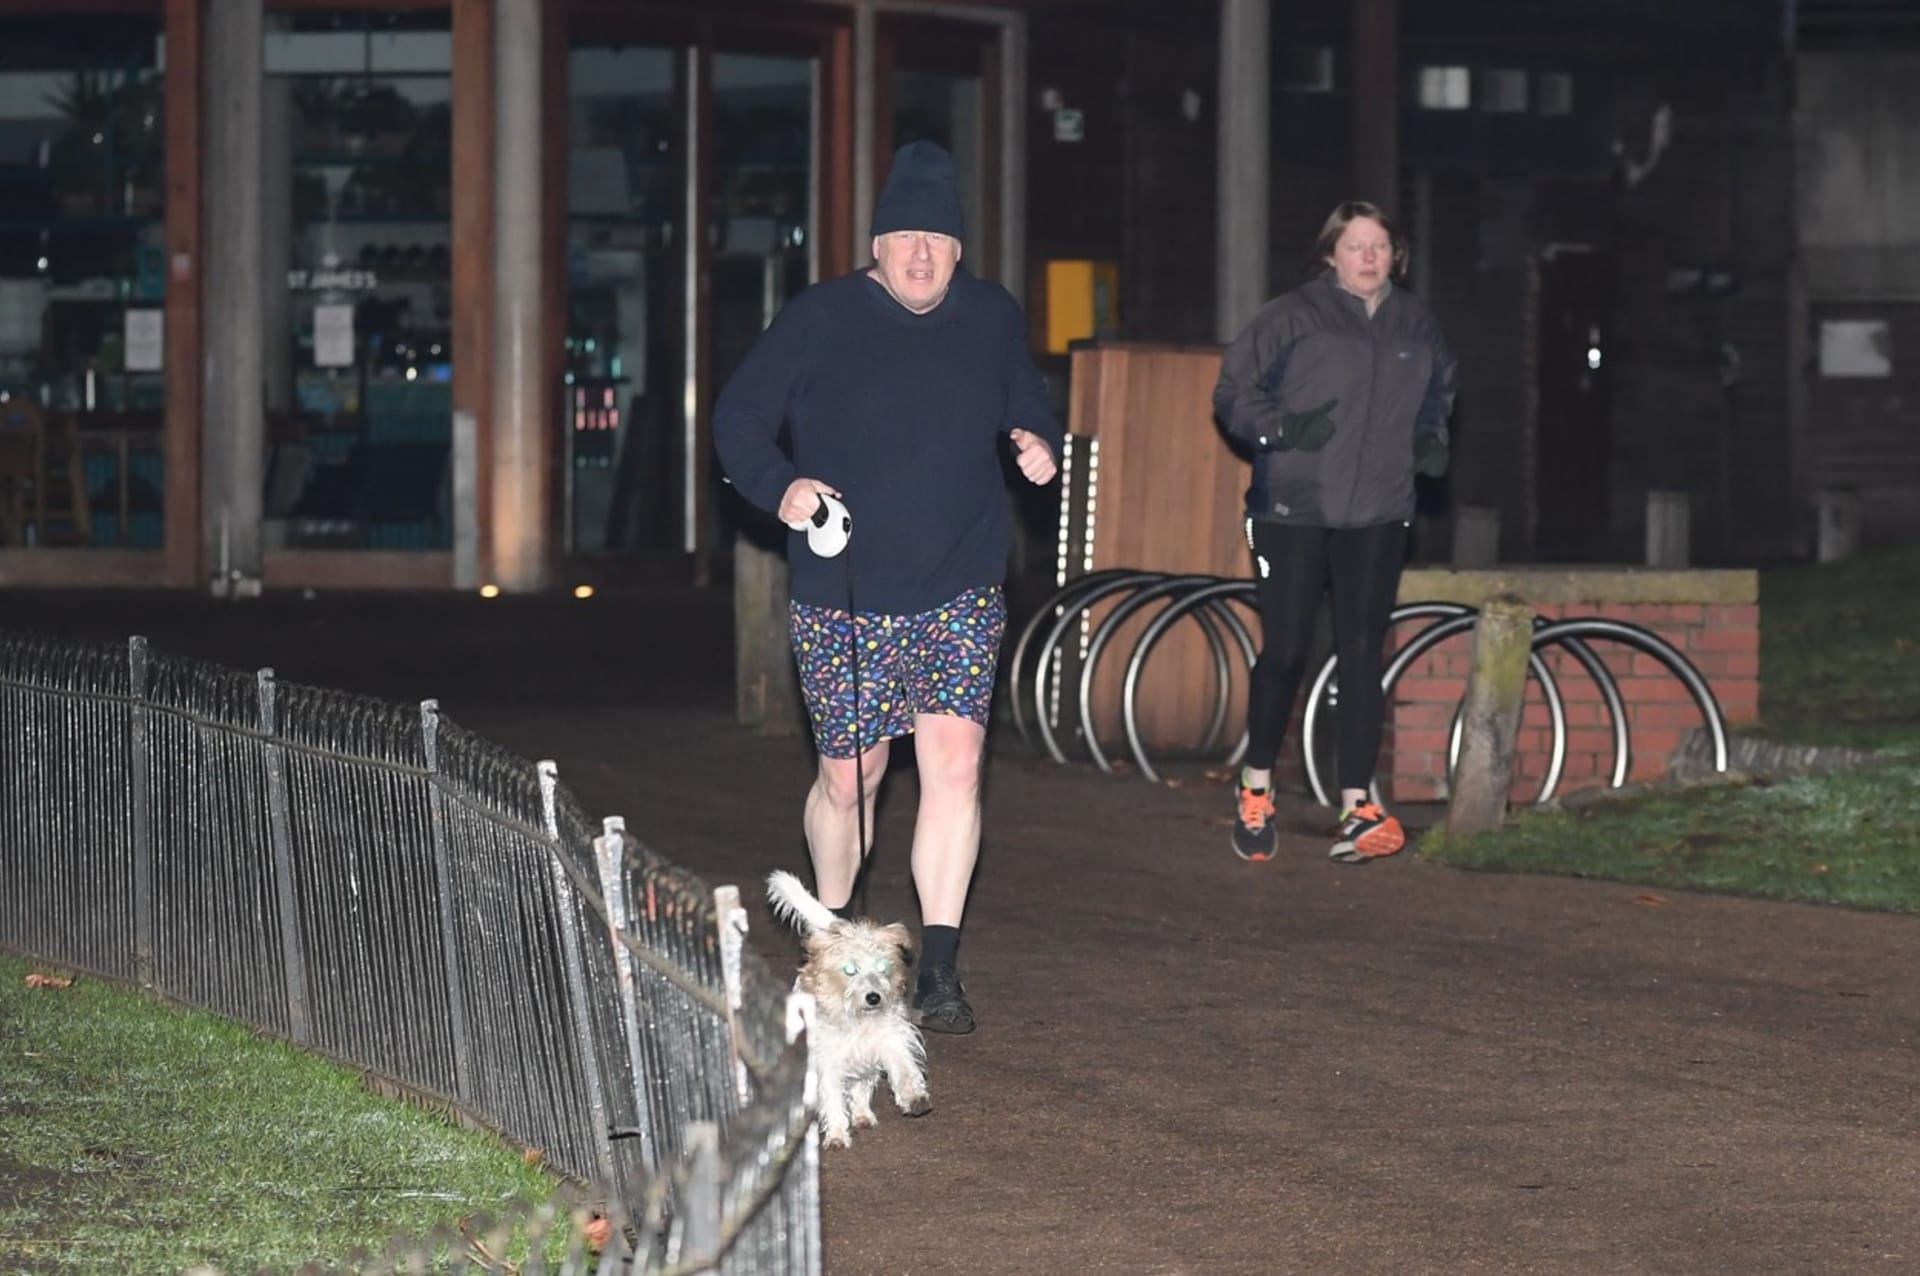 Boris Johnson se šel proběhnout se svým psem. V týdnu ho čeká další kolečko rozhovorů o večírcích v Downing Street.